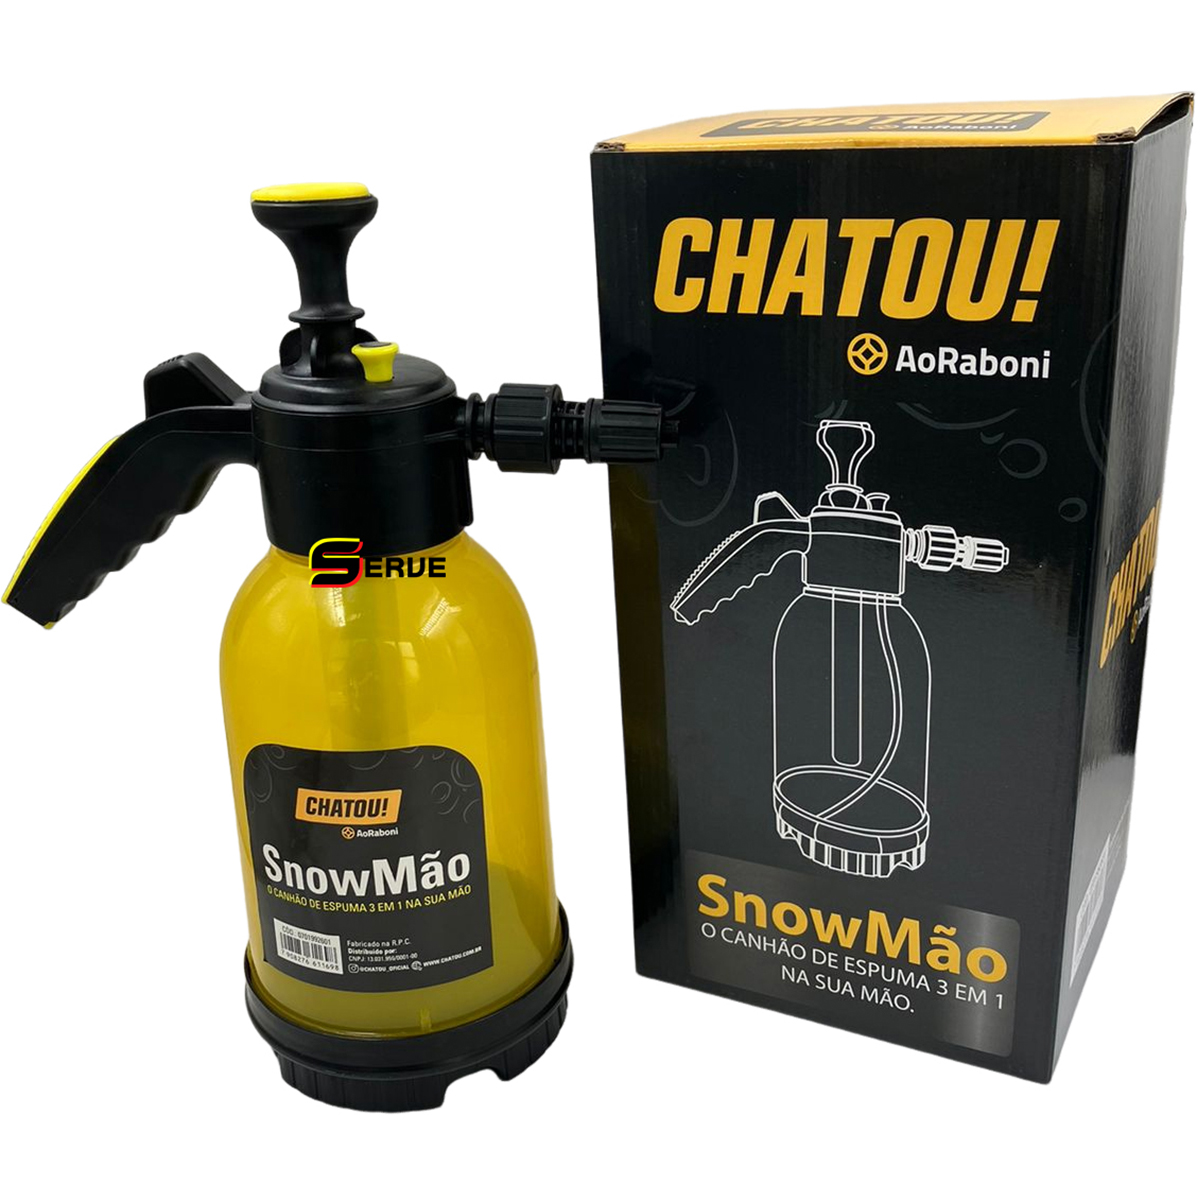 Snowmão Shampoozeira Manual 3 Em 1 Água, Químicos E Espuma - CHATOU! AoRaboni